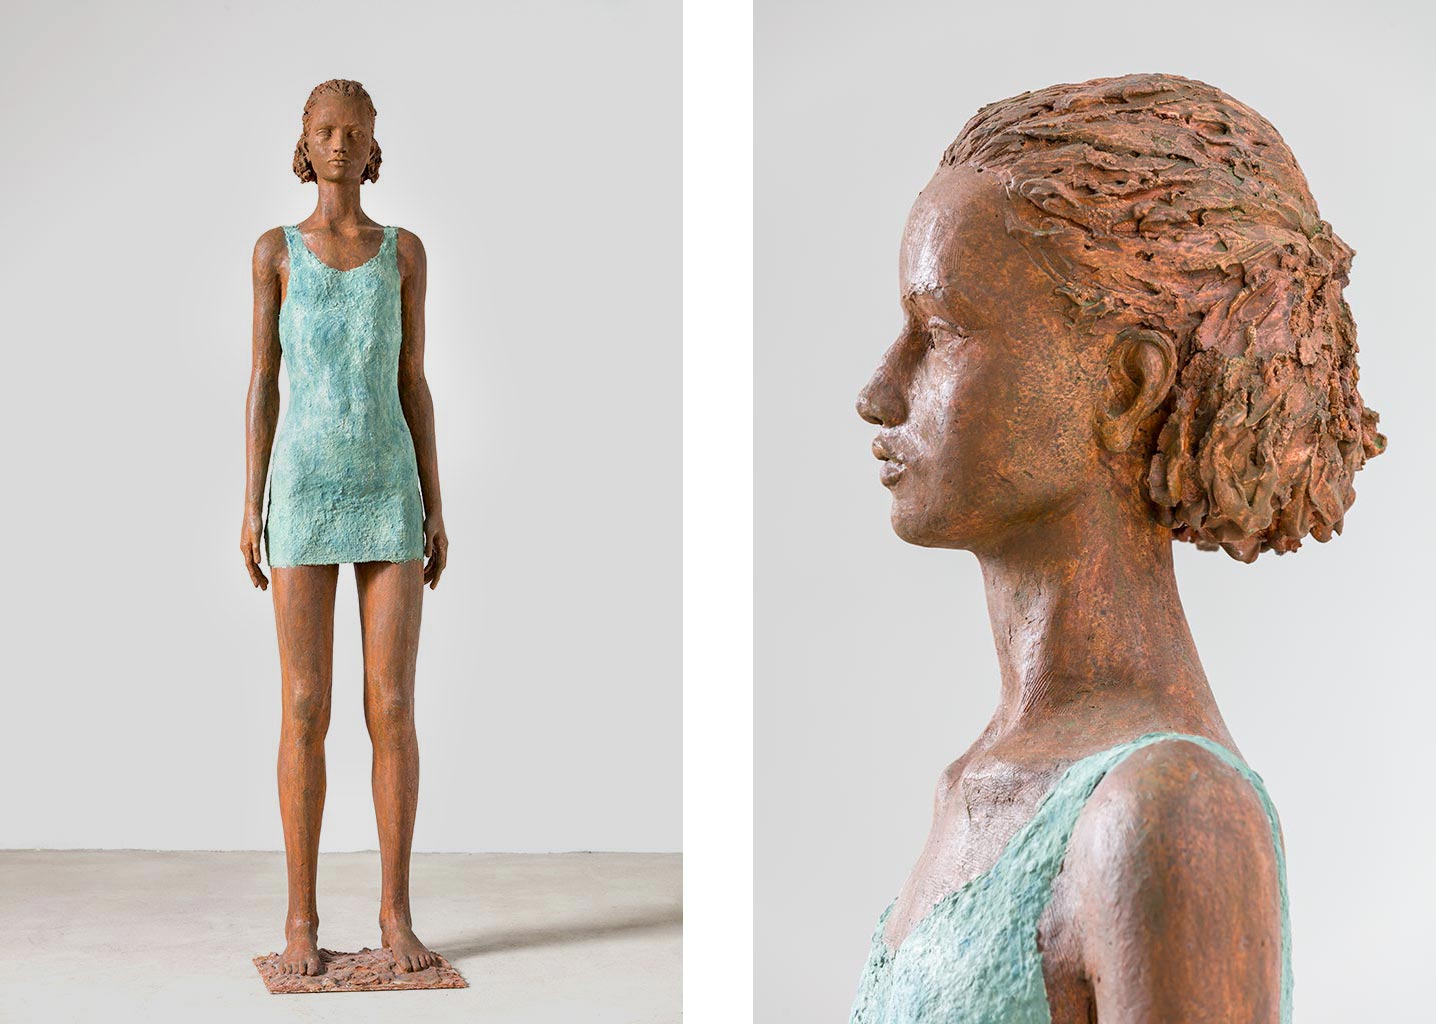 Mädchen mit türkisem Kleid, Alabastergips, Zellstoff, 158 cm, 2014